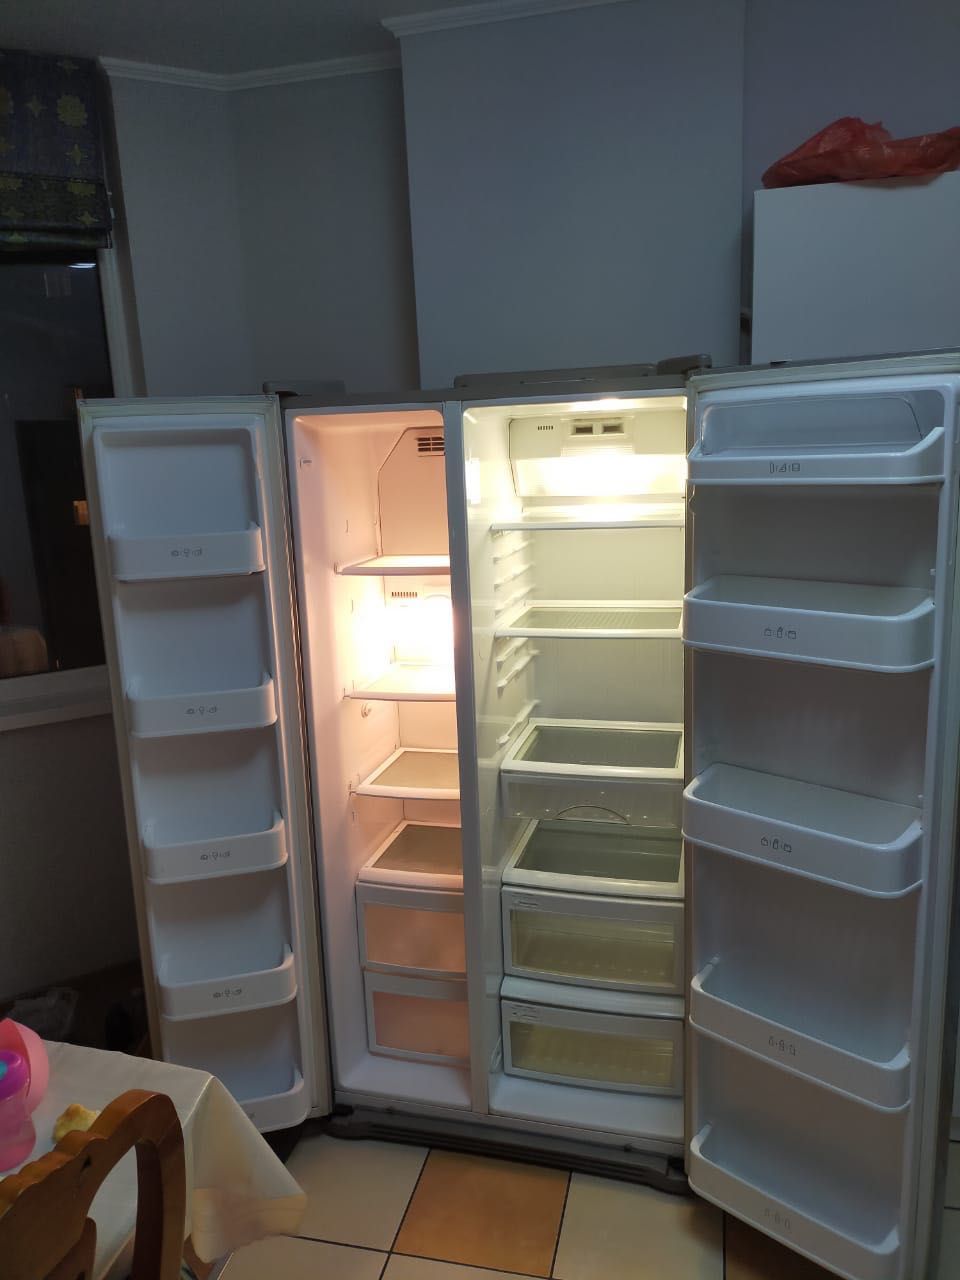 Двустворчатый холодильник